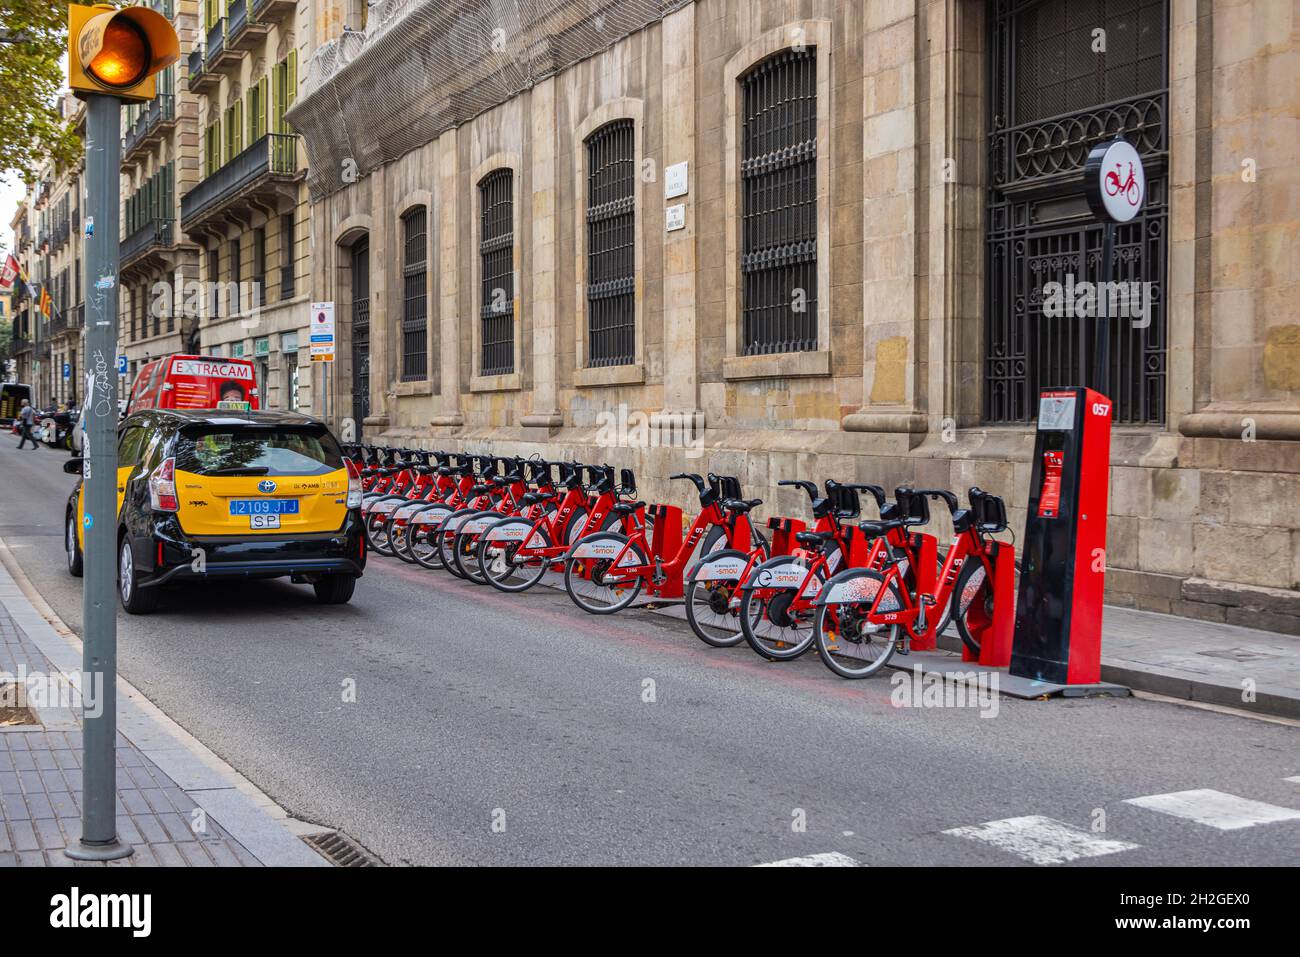 Barcellona, Spagna - 21 settembre 2021: Noleggio biciclette presso la stazione di parcheggio in strada. Noleggio di biciclette pubbliche. Stile di vita sano. Bicicletta rac Foto Stock